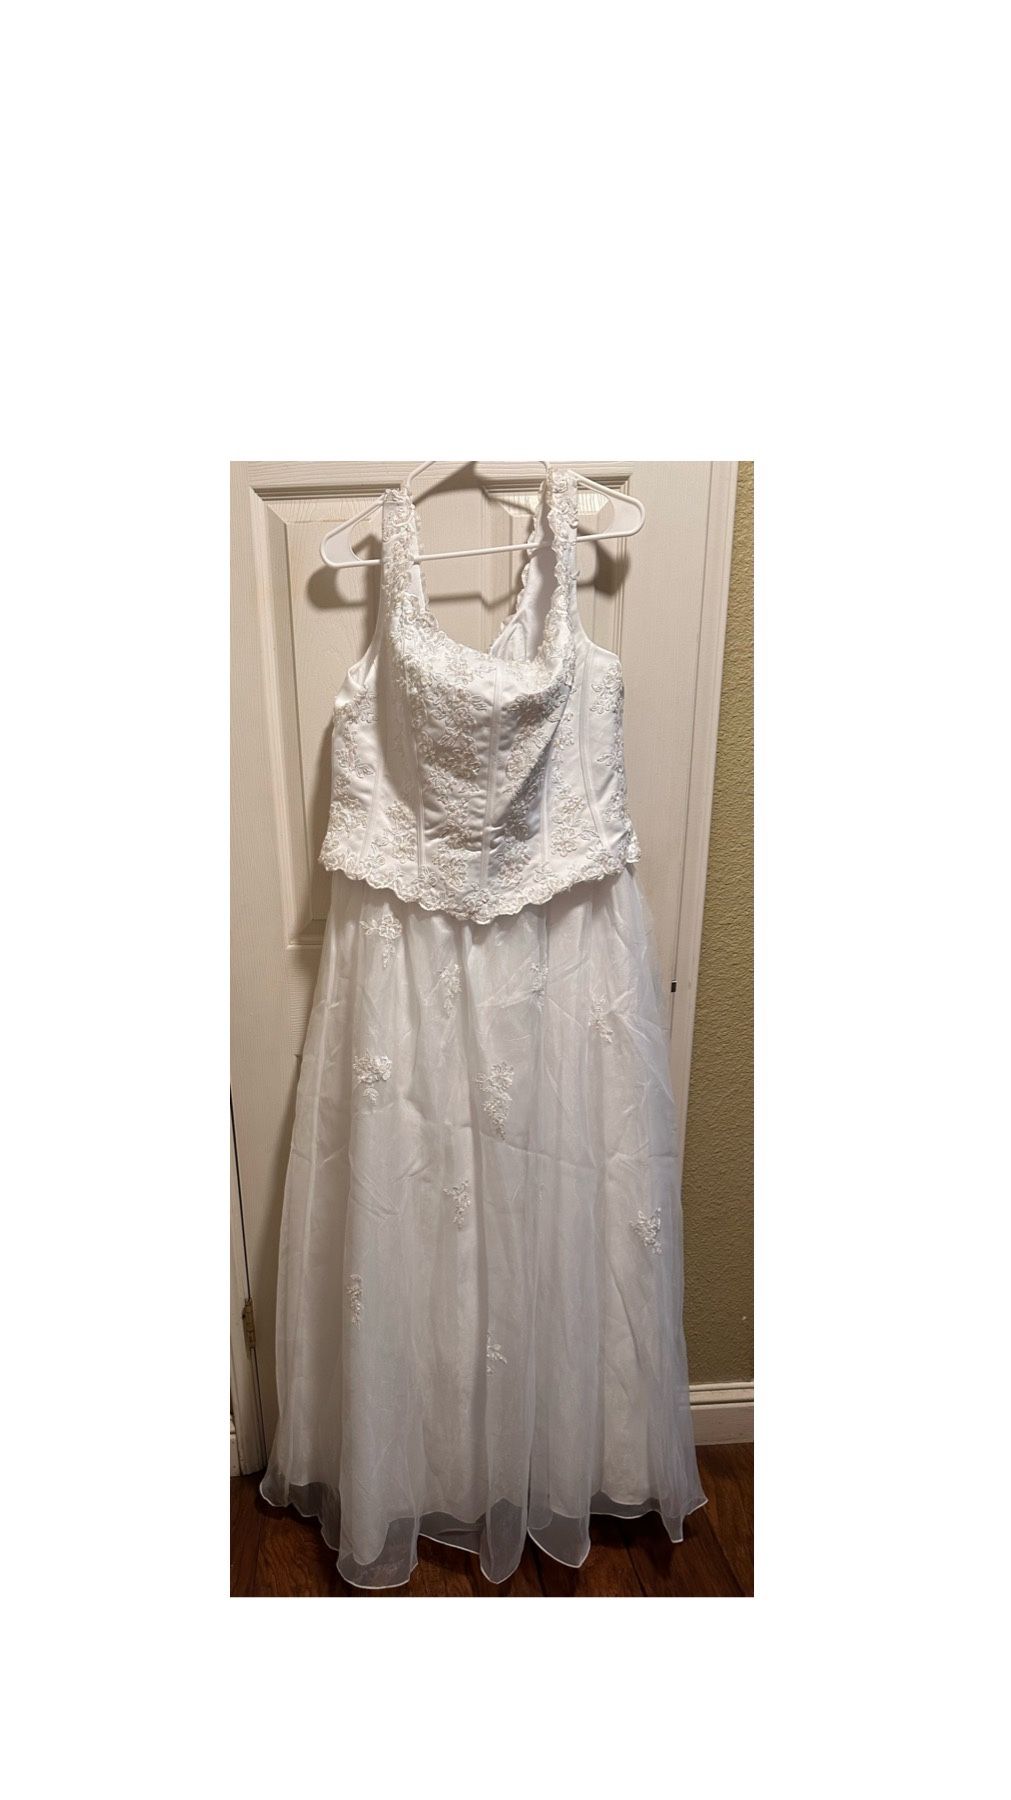 Xxl White Wedding Dress ,New With Tags 